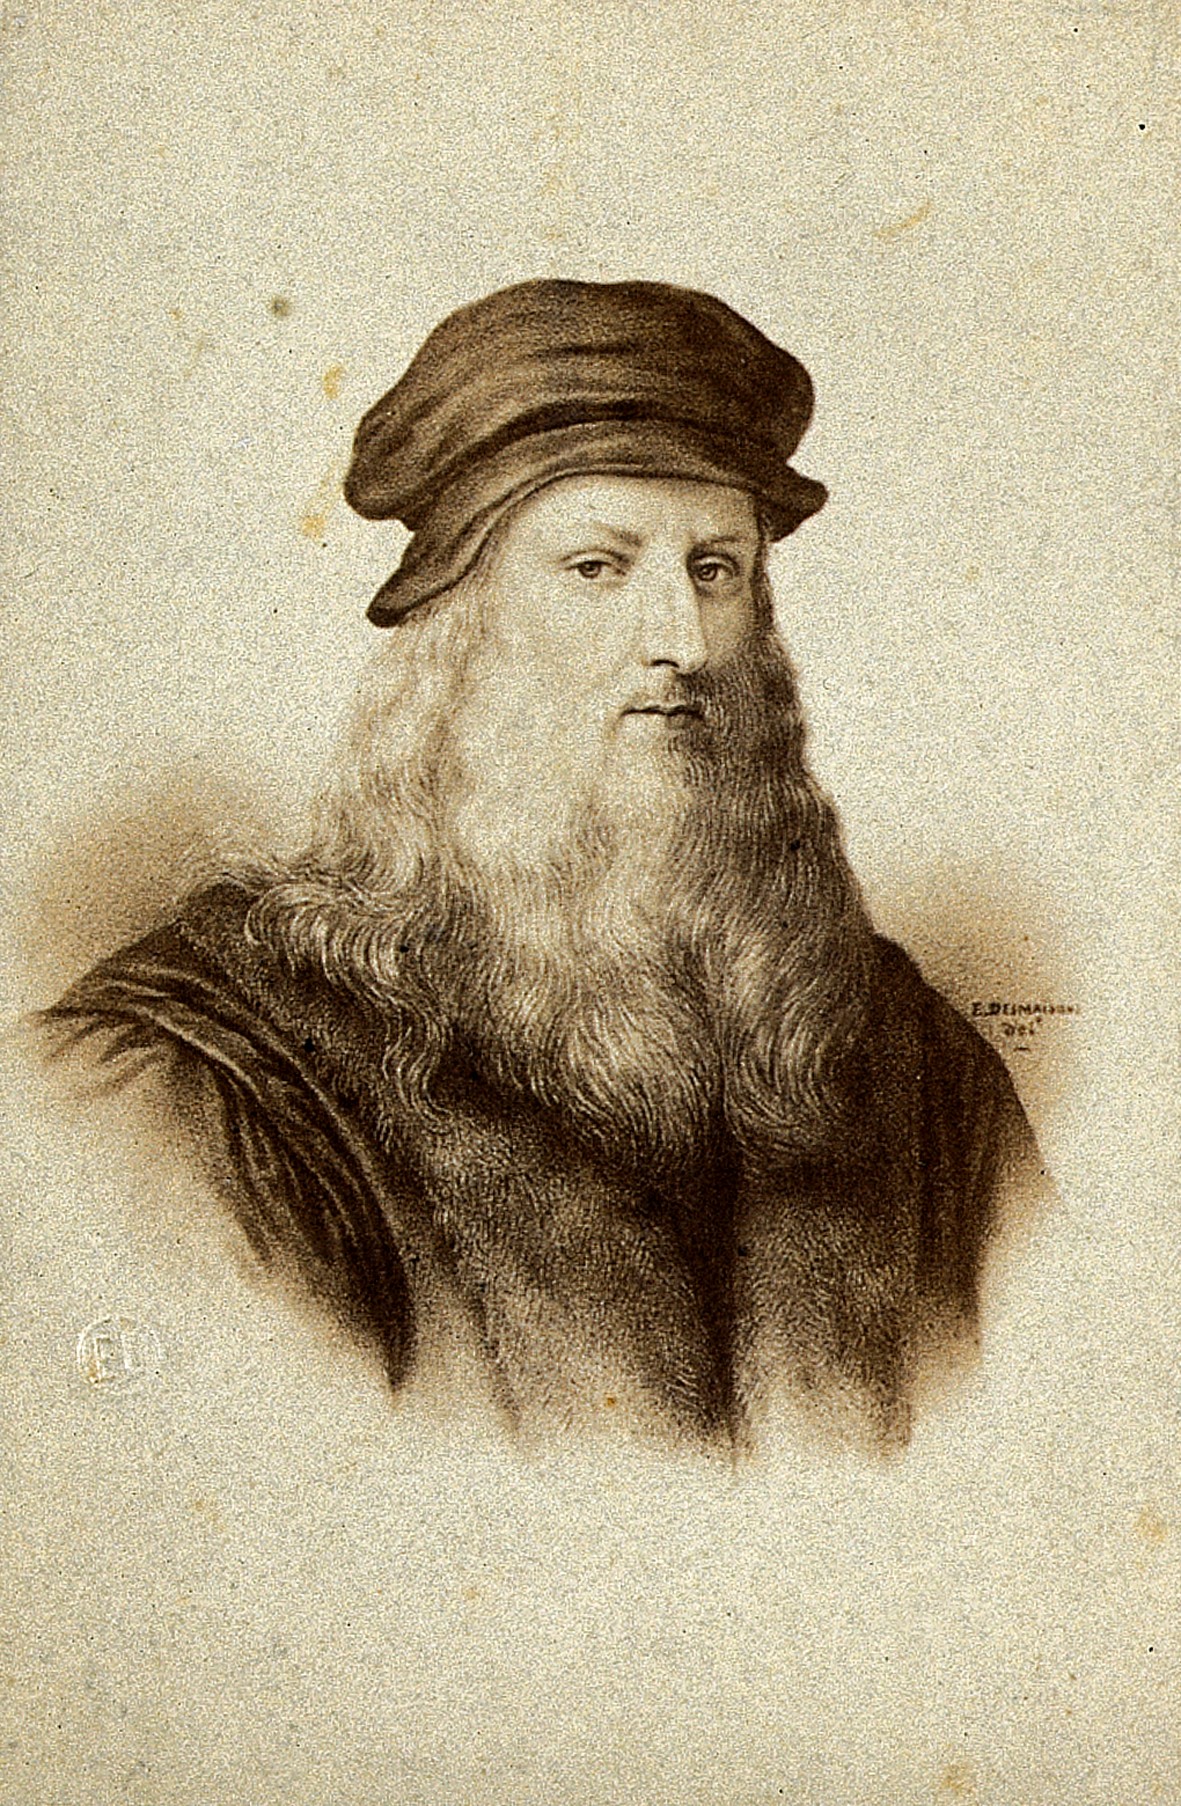 Leonardo da Vinci. Photograph by E. Desmaisons